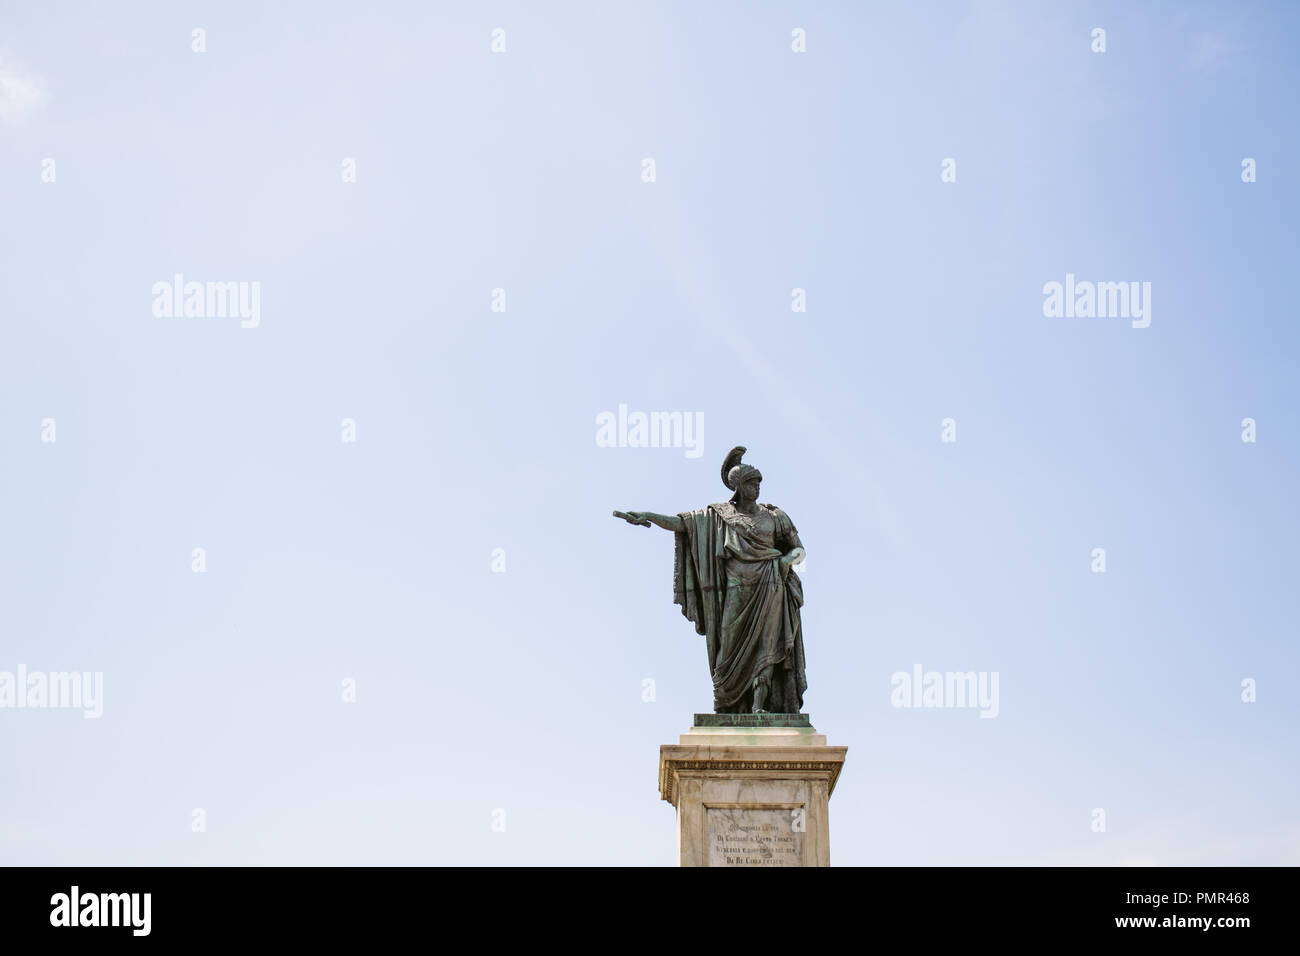 Statue einer römischen Zenturio oder Kaiser Holding eine Rolle und zeigt auf der linken Seite des Rahmens (Recht der Statue) gegen einen leeren blauen Himmel mit Kopie Raum Stockfoto